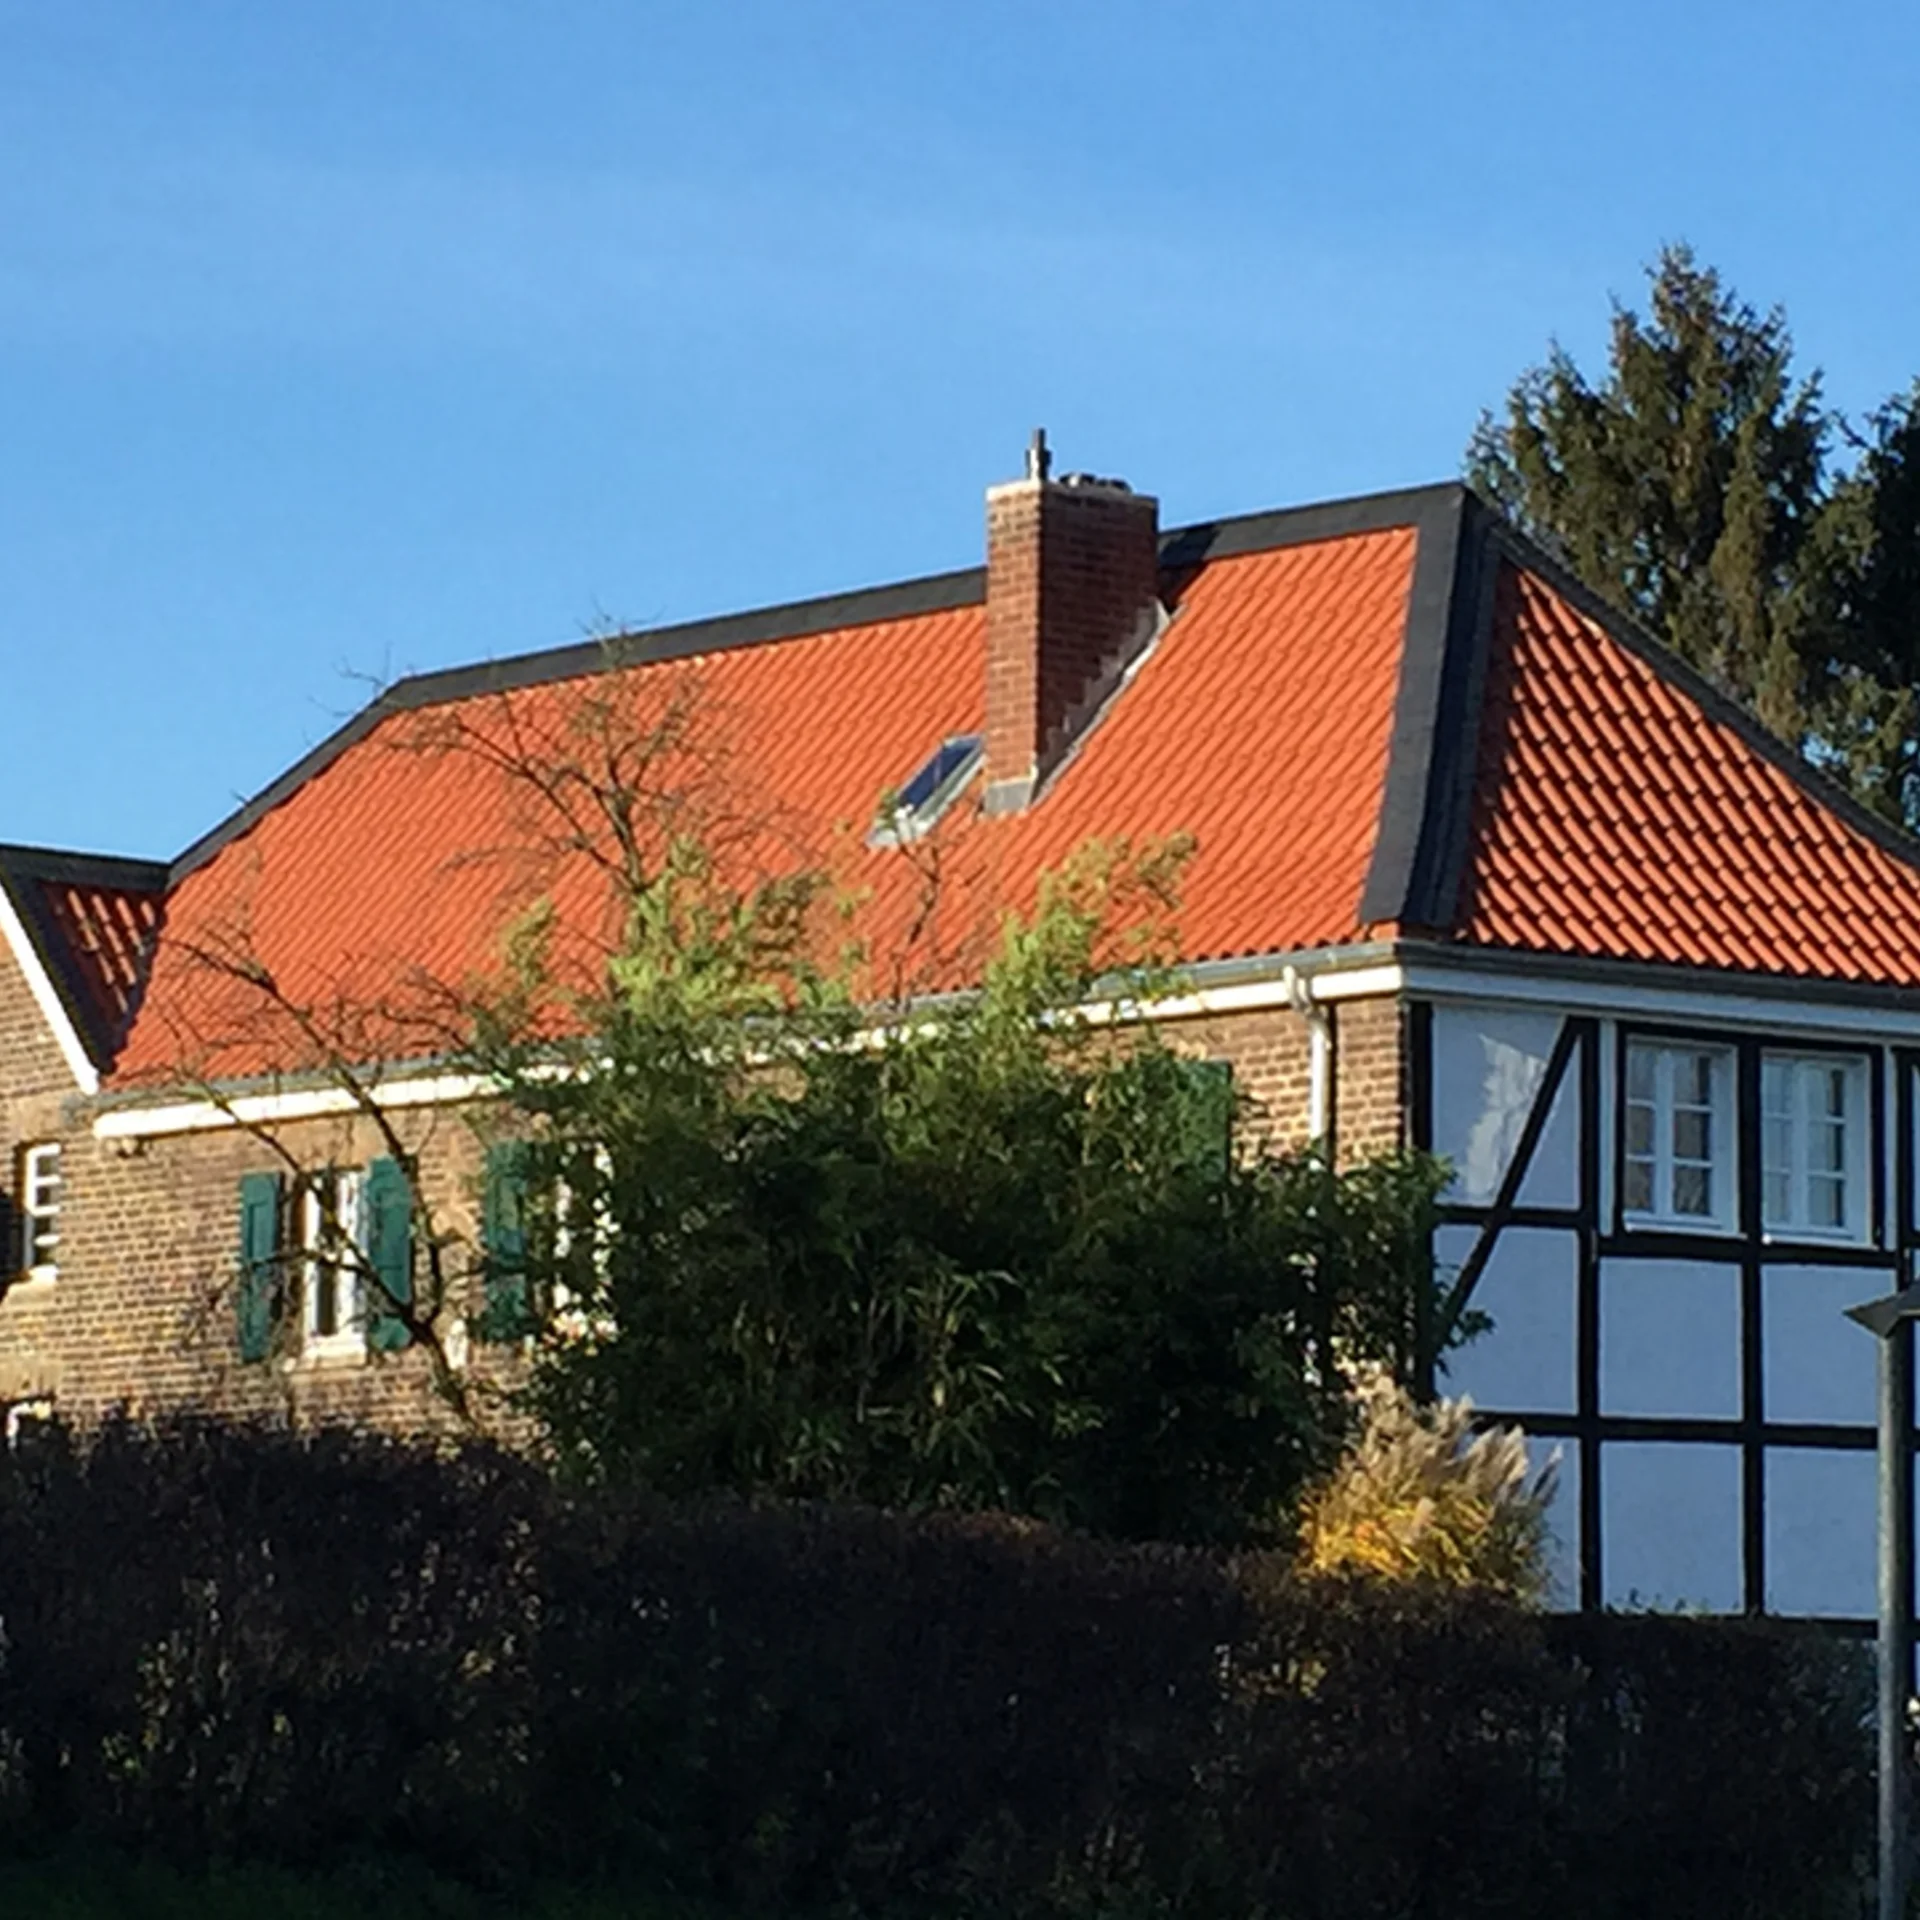 Fachwerkhaus mit rotem Spitzdach